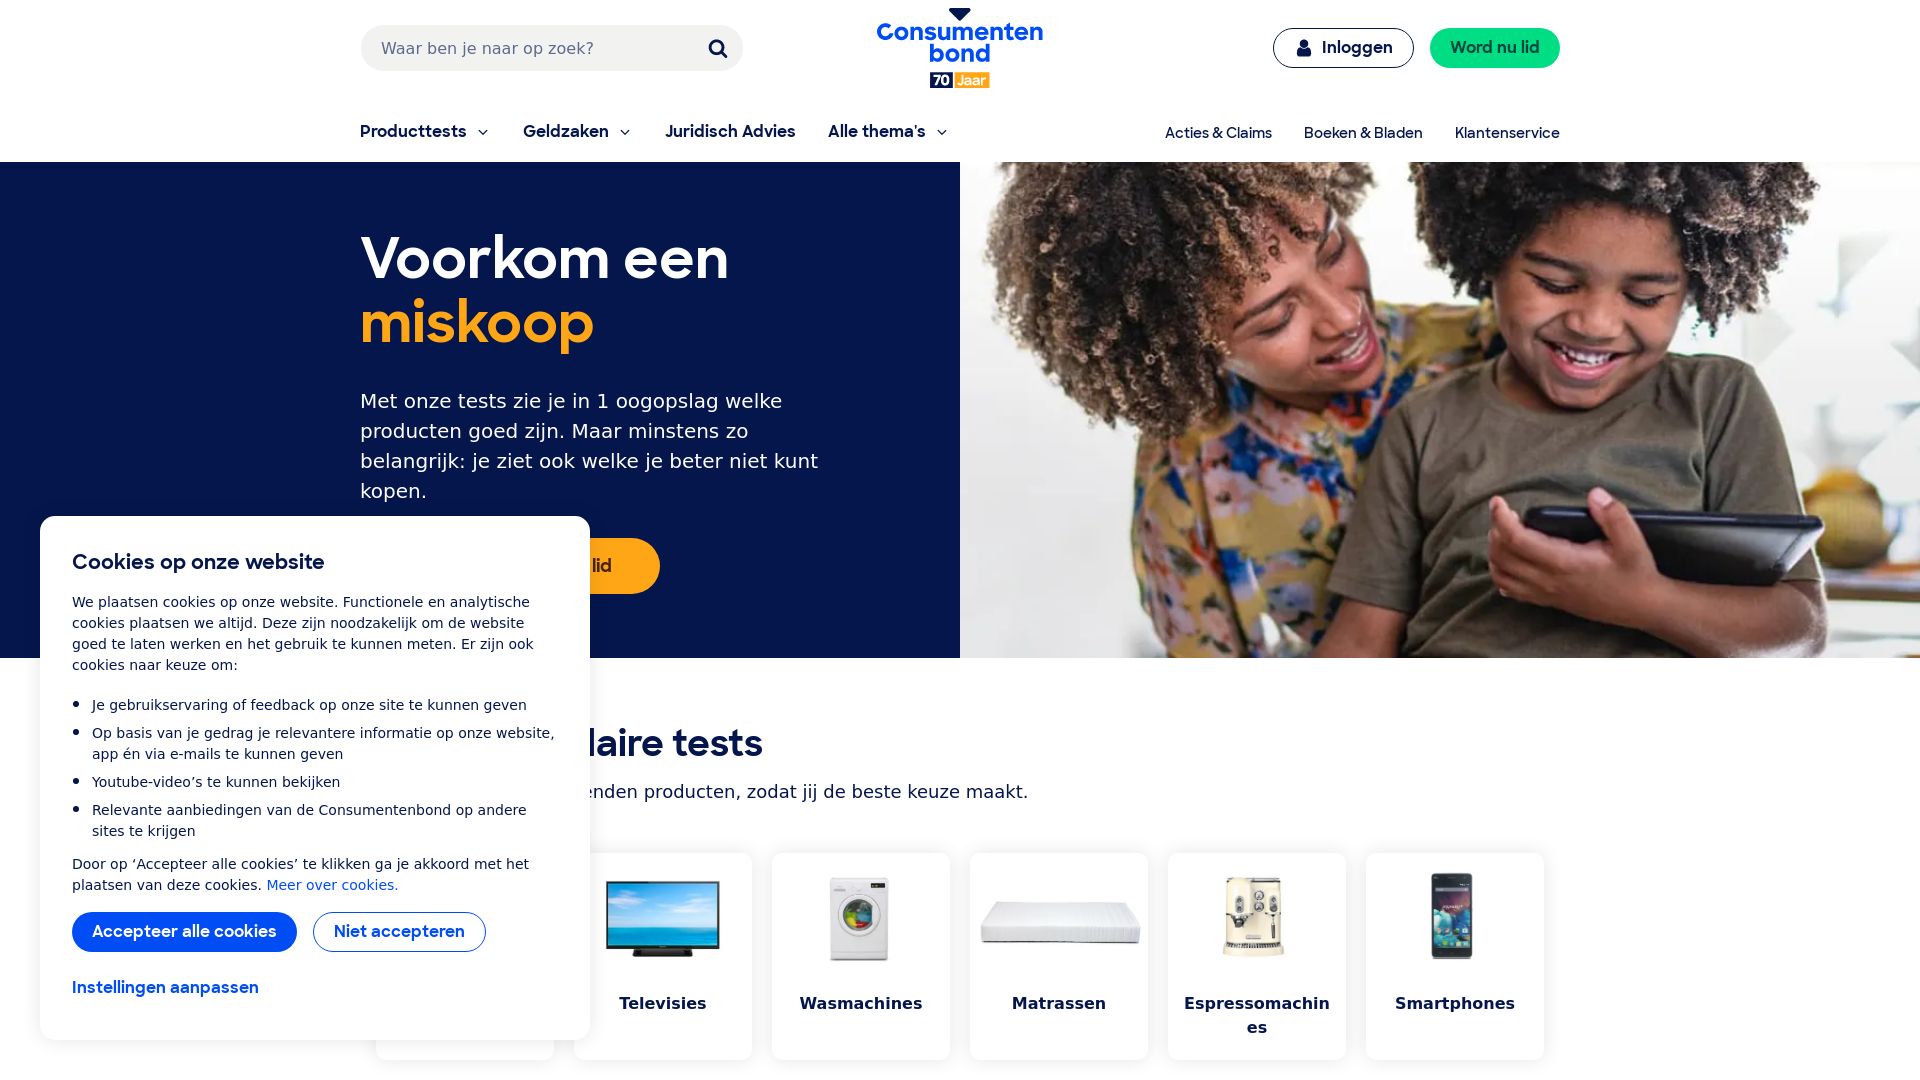 网站状态 consumentenbond.nl 是  在线的